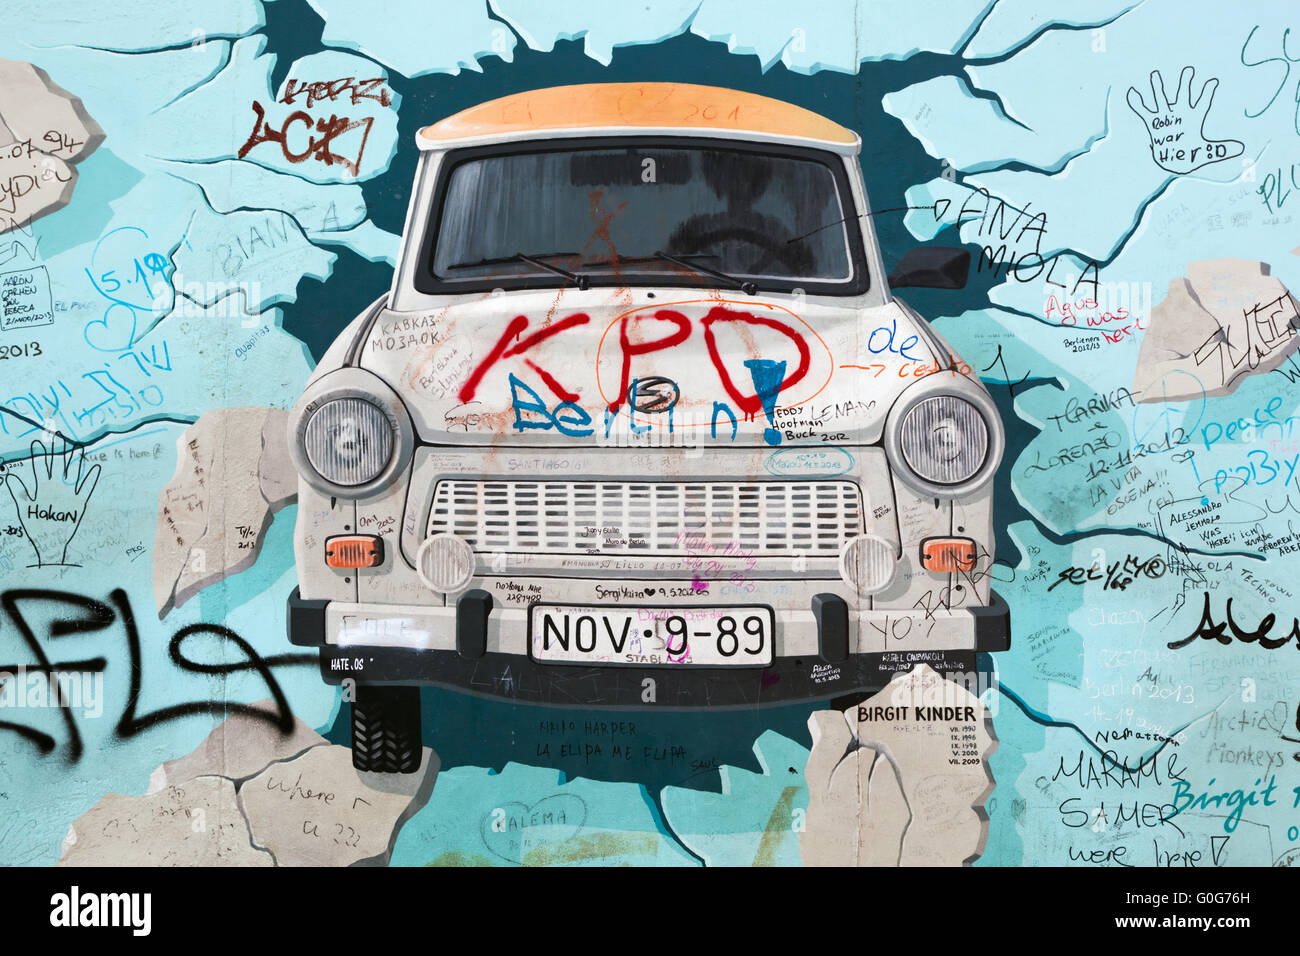 East Side Gallery - Mur de Berlin. Berlin, Allemagne Banque D'Images